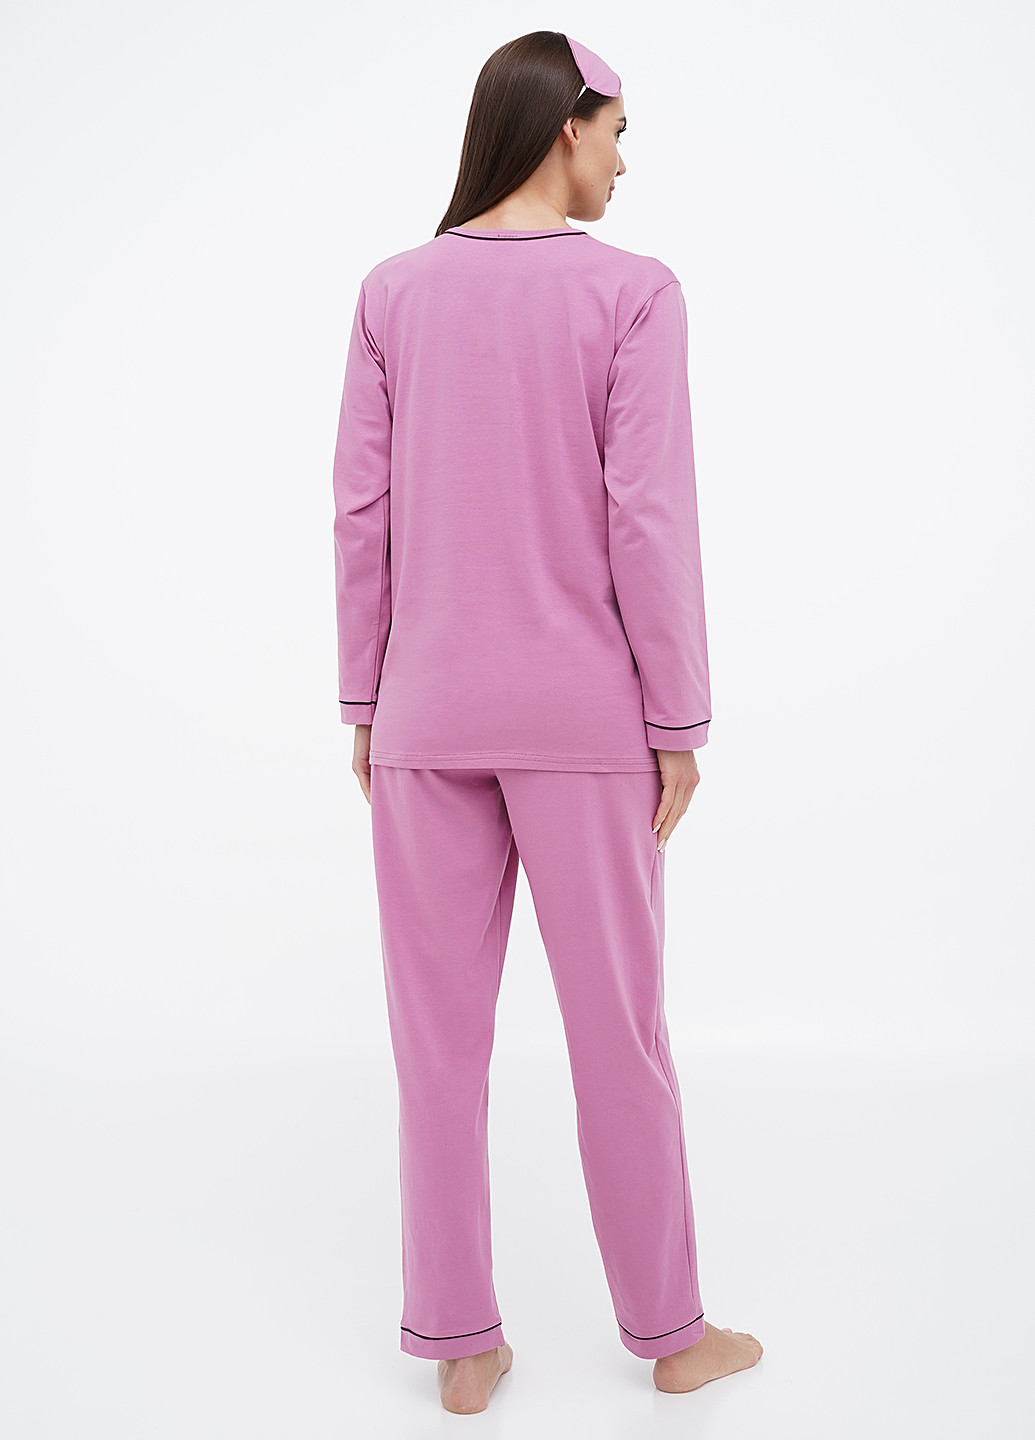 Светло-фиолетовая всесезон пижама (лонгслив, брюки) лонгслив + брюки Lucci